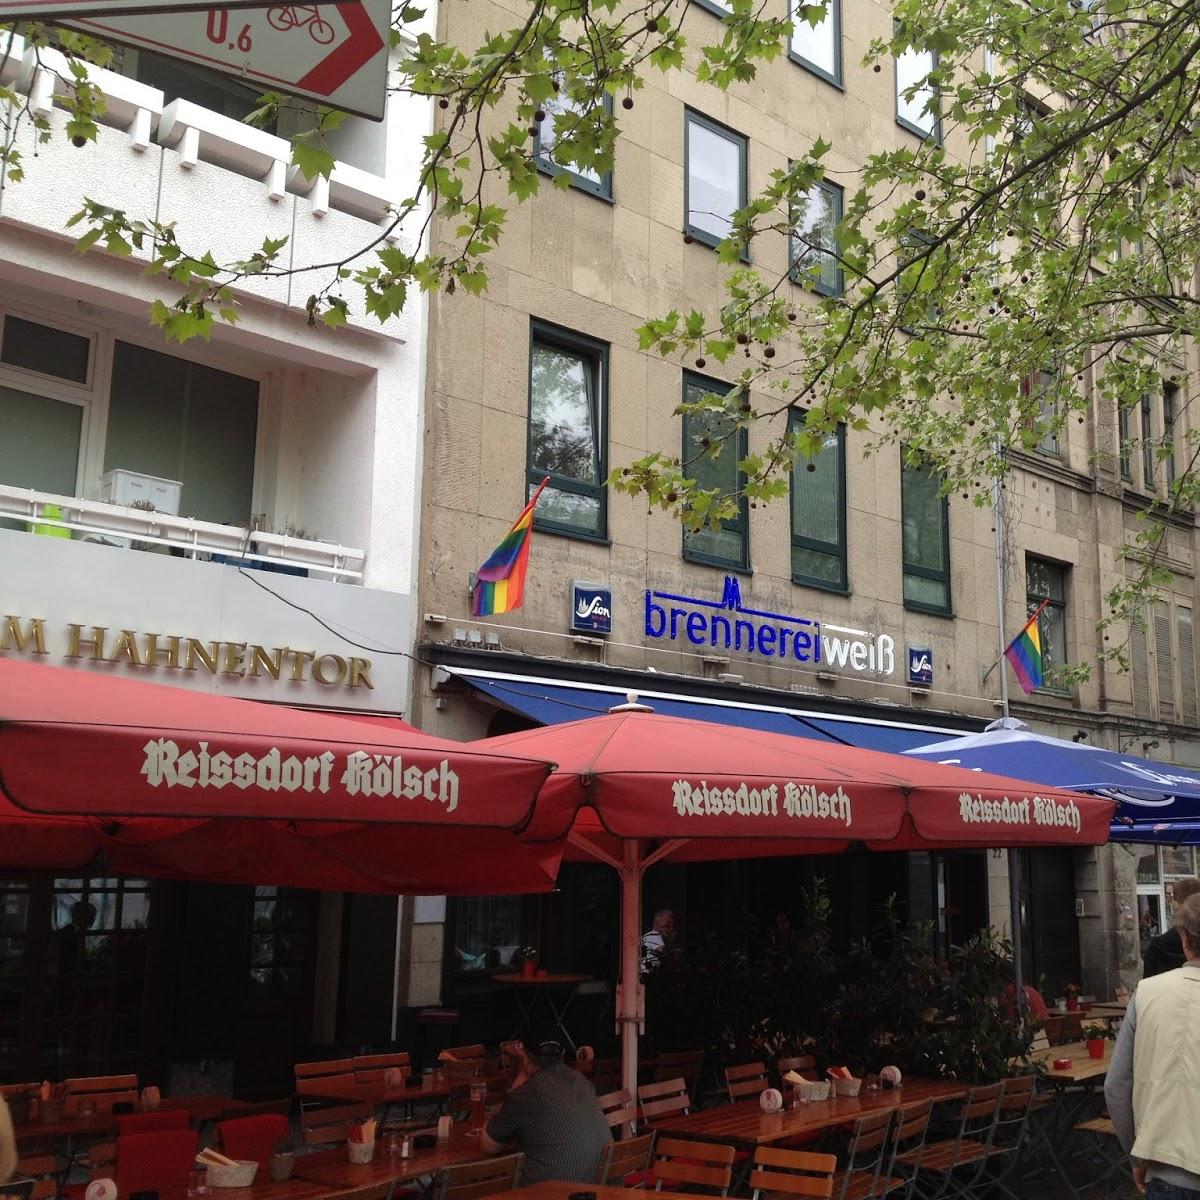 Restaurant "Brennerei Weiß" in Köln